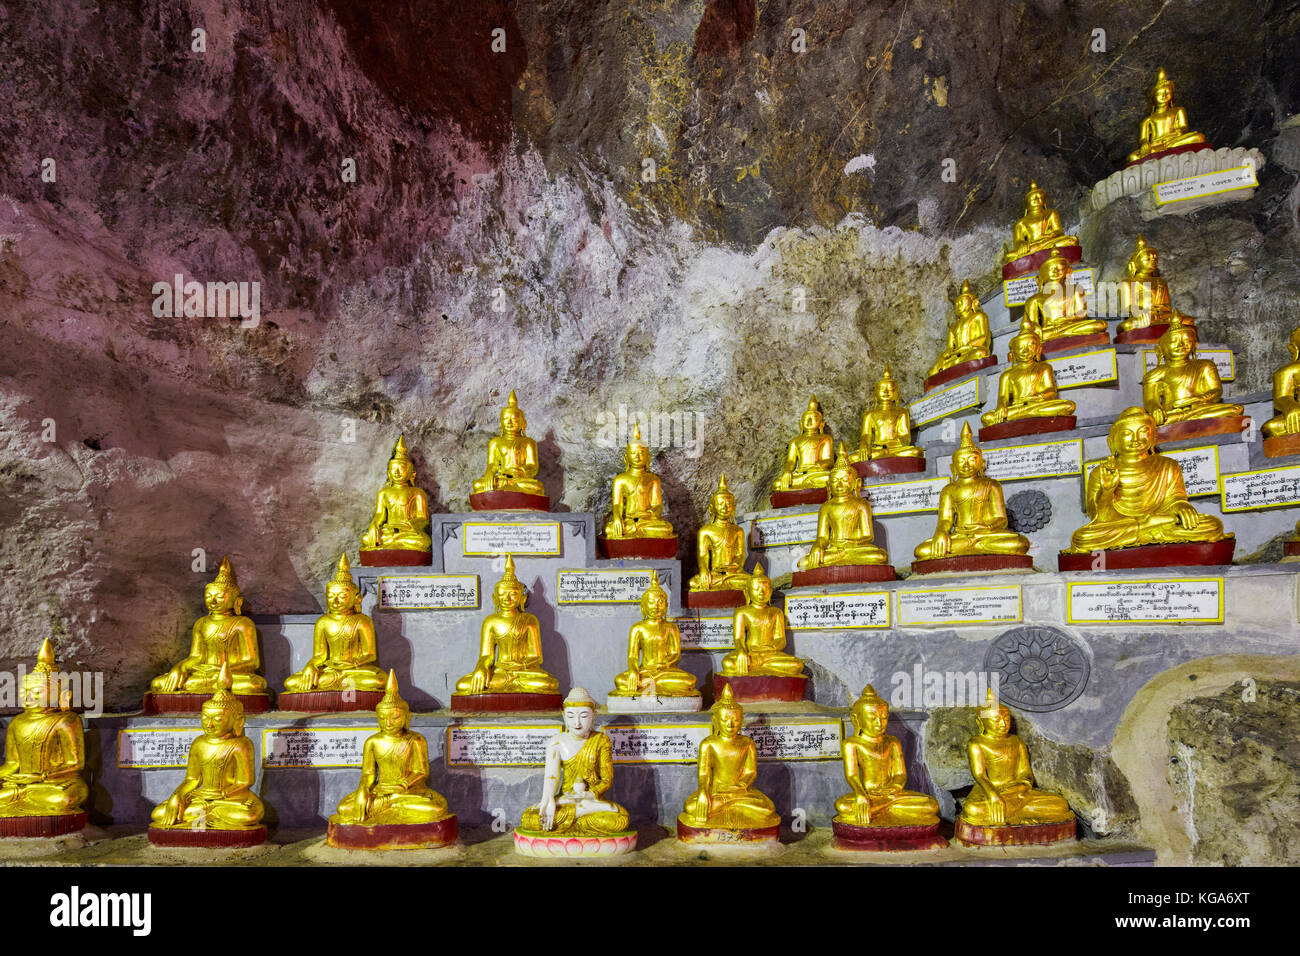 Pindaya Cave, Myanmar (Burma) Stock Photo